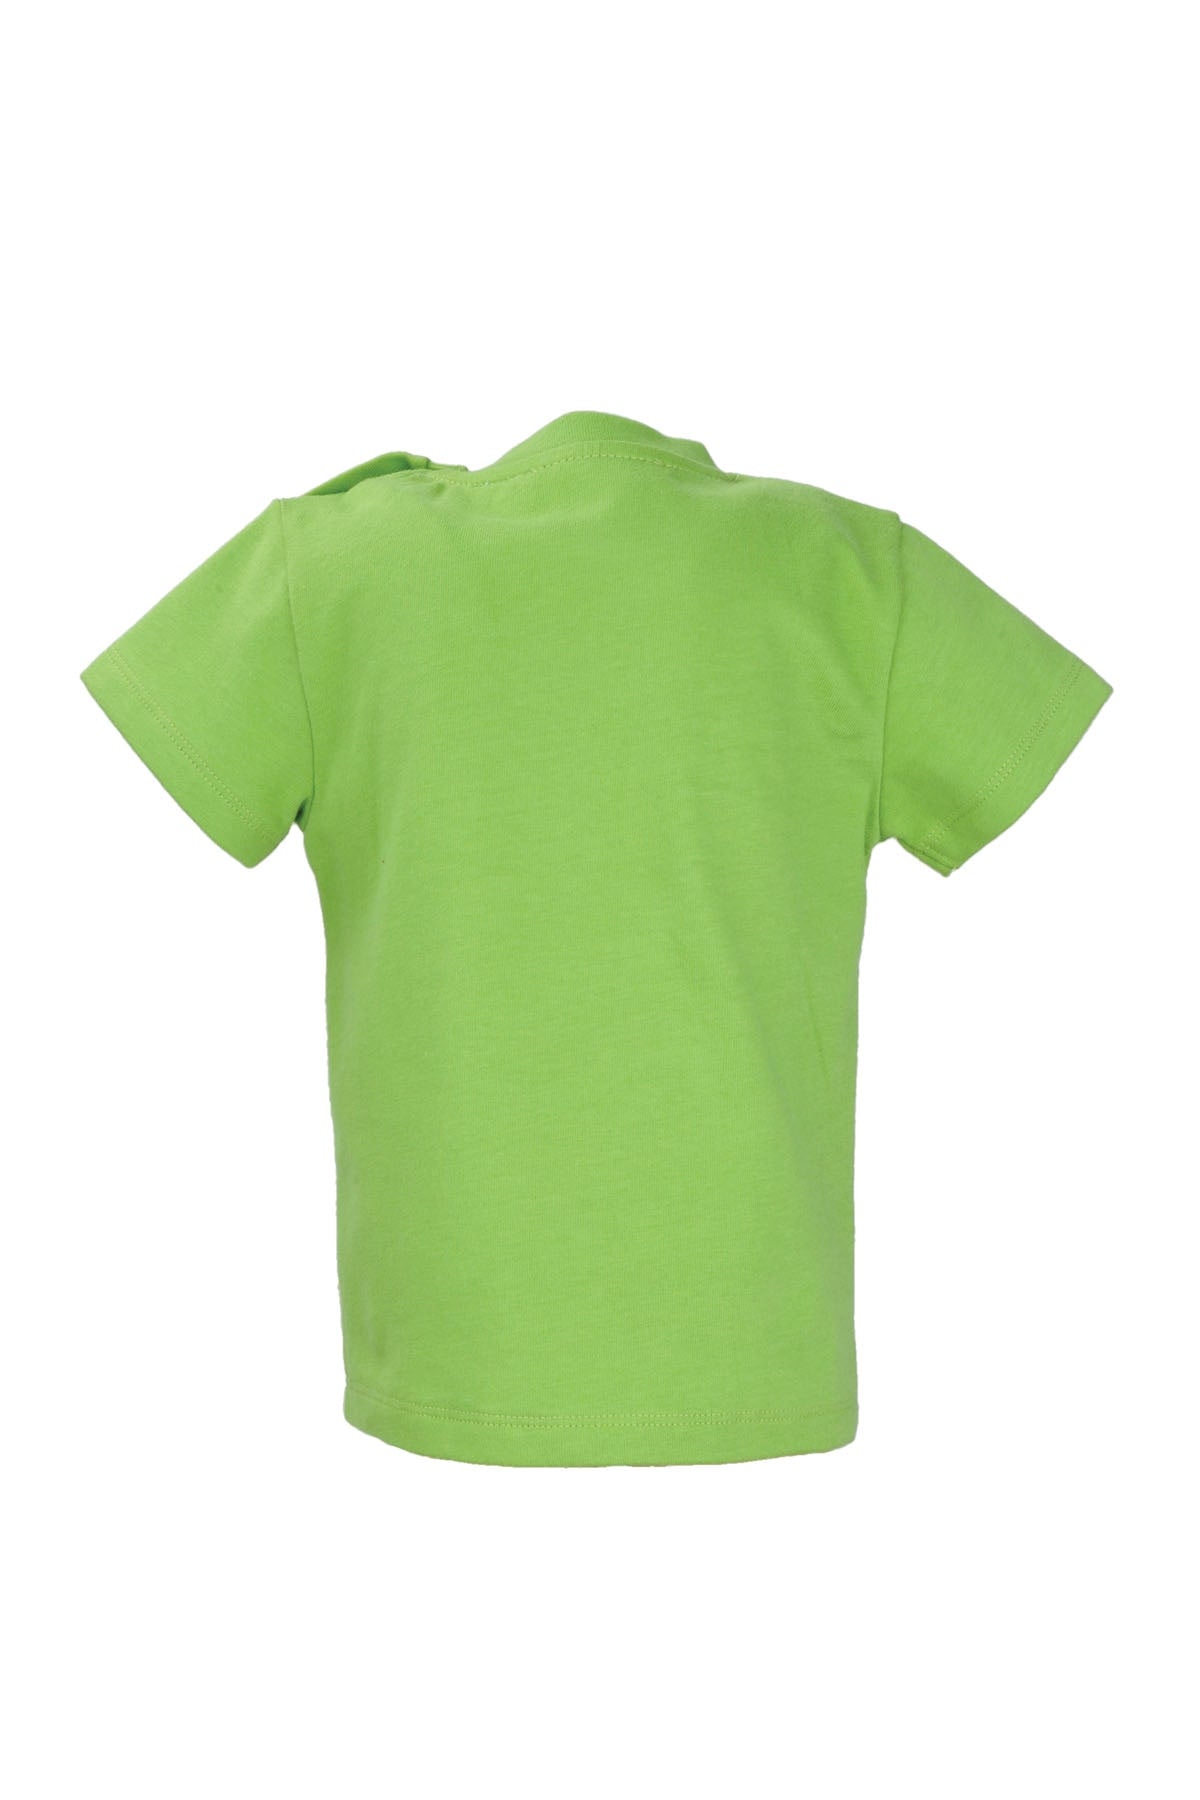 Erkek Bebek Yeşil Funday Baskılı T-Shirt (9ay-4yaş)-2